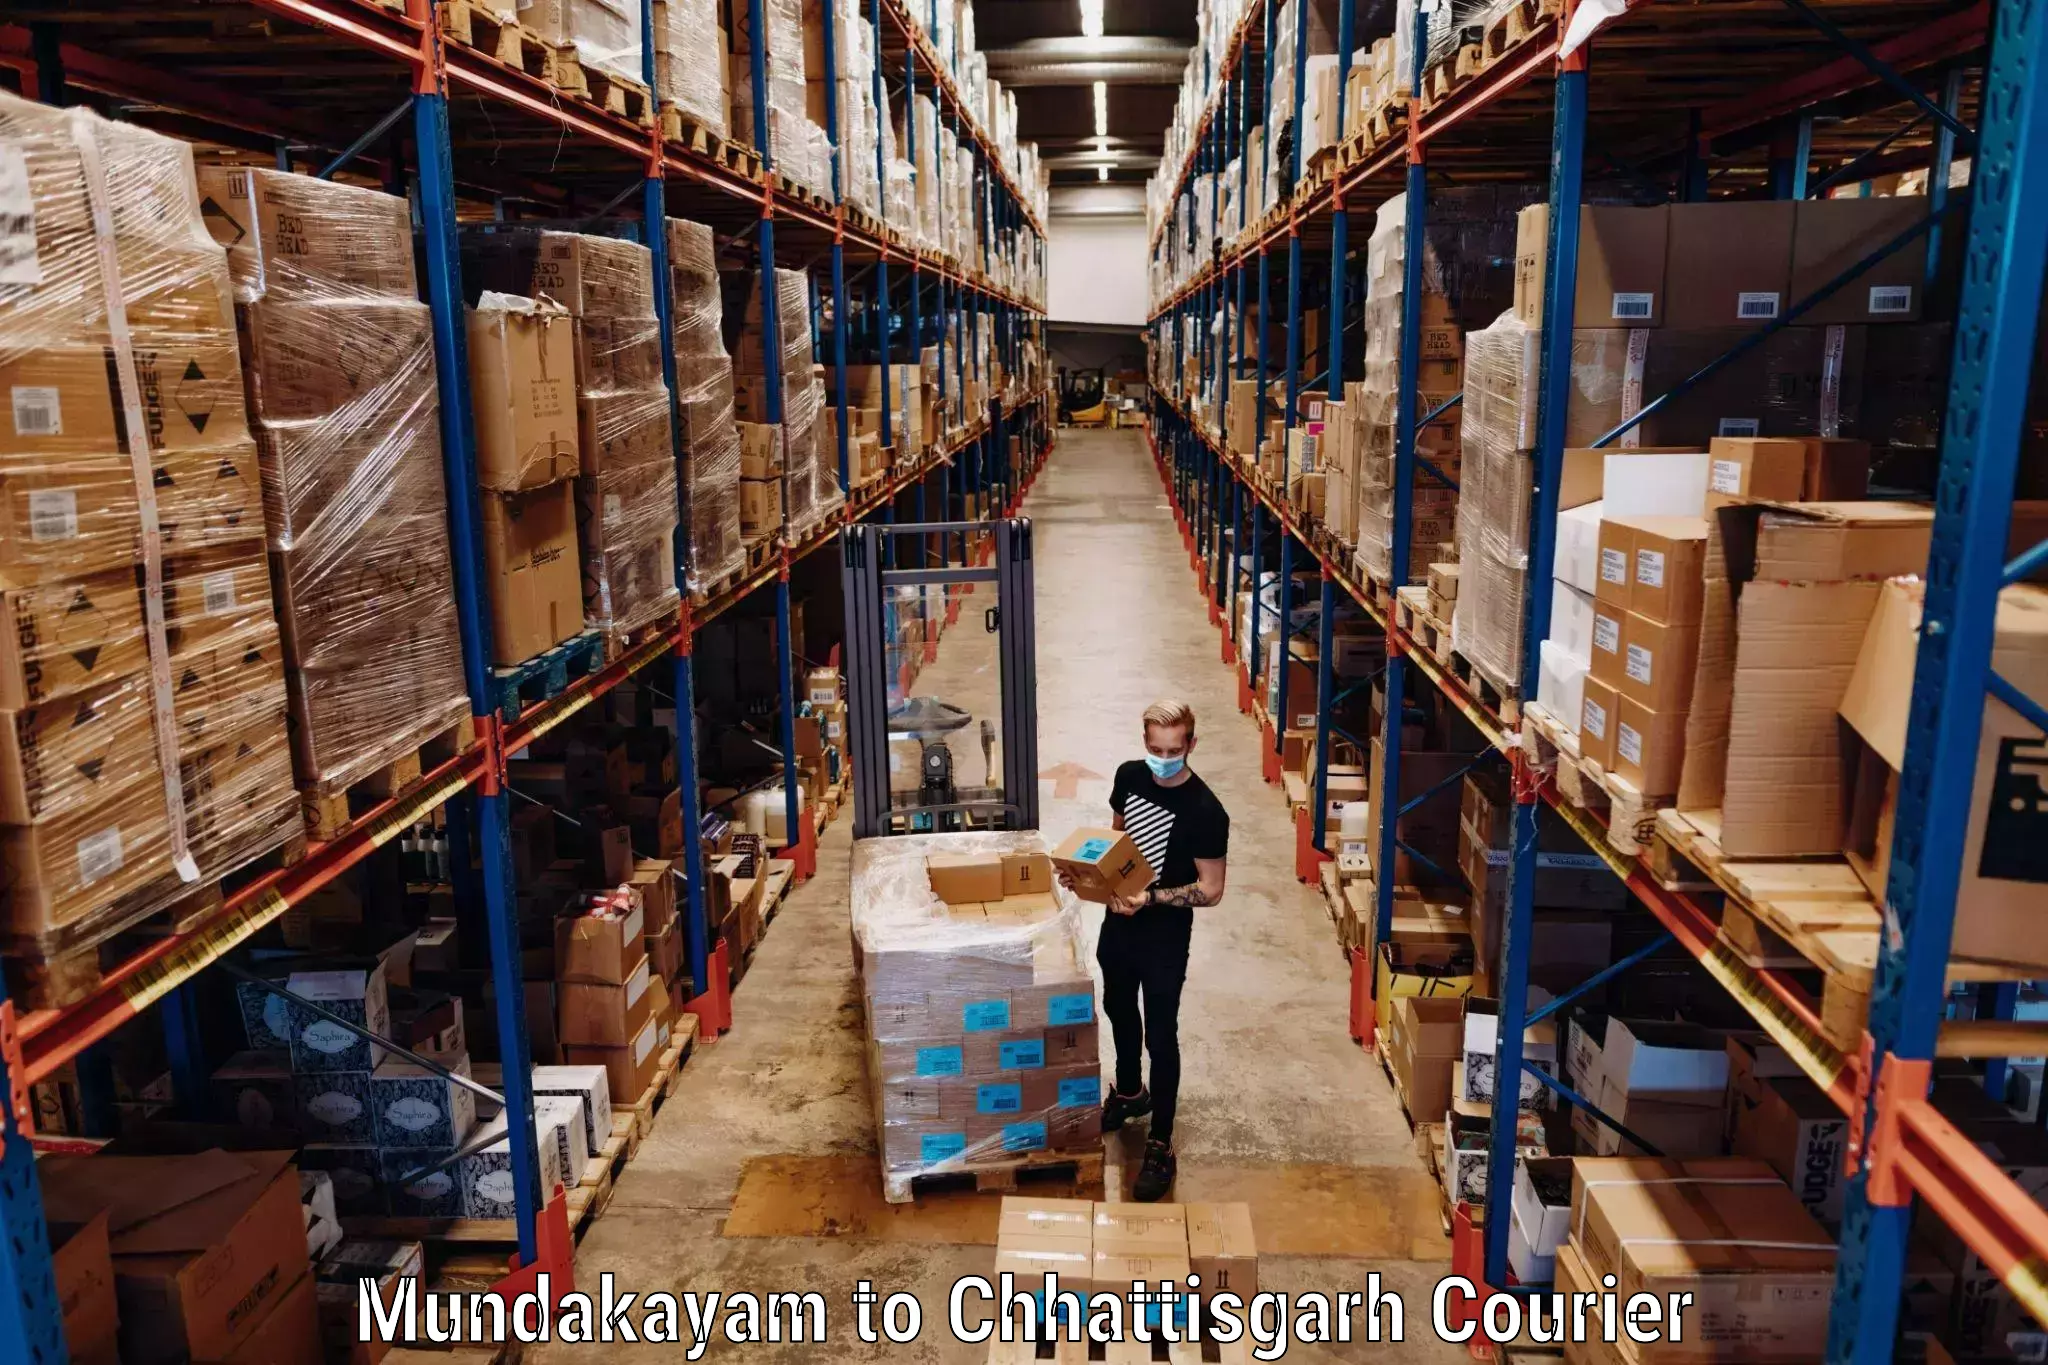 Baggage delivery management Mundakayam to Bijapur Chhattisgarh